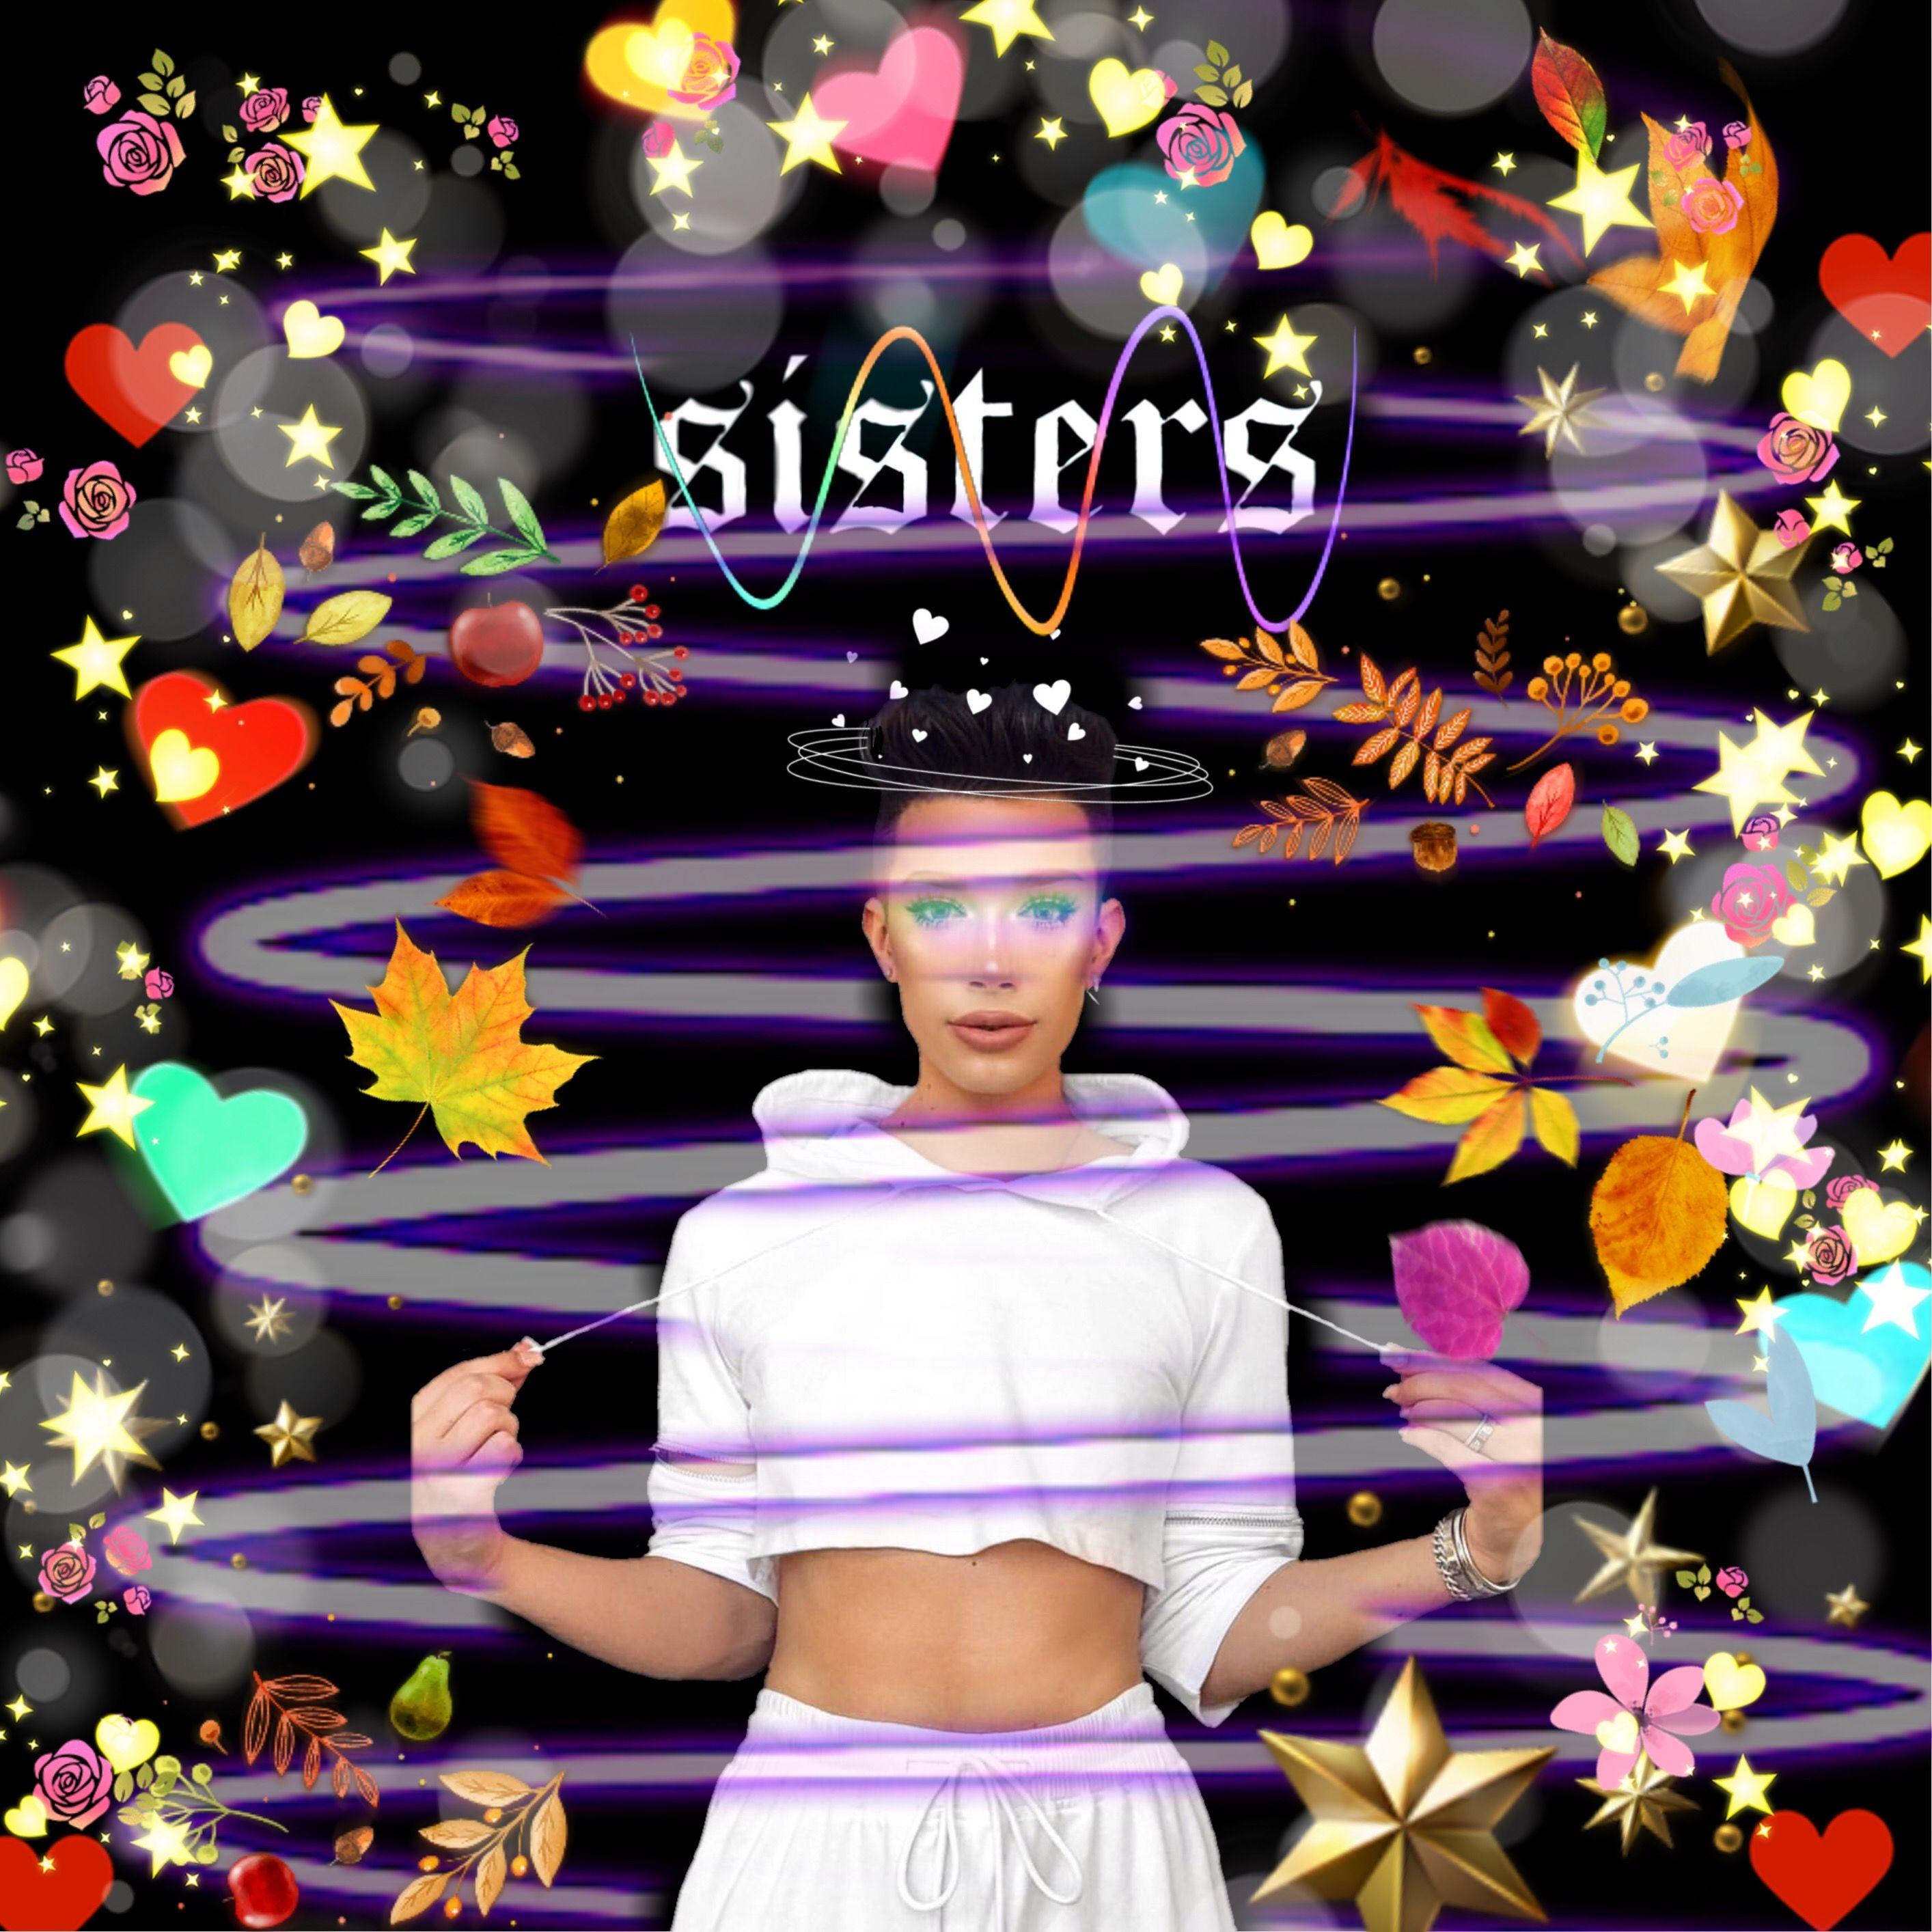 Hi Sisters Wallpapers - Top Những Hình Ảnh Đẹp